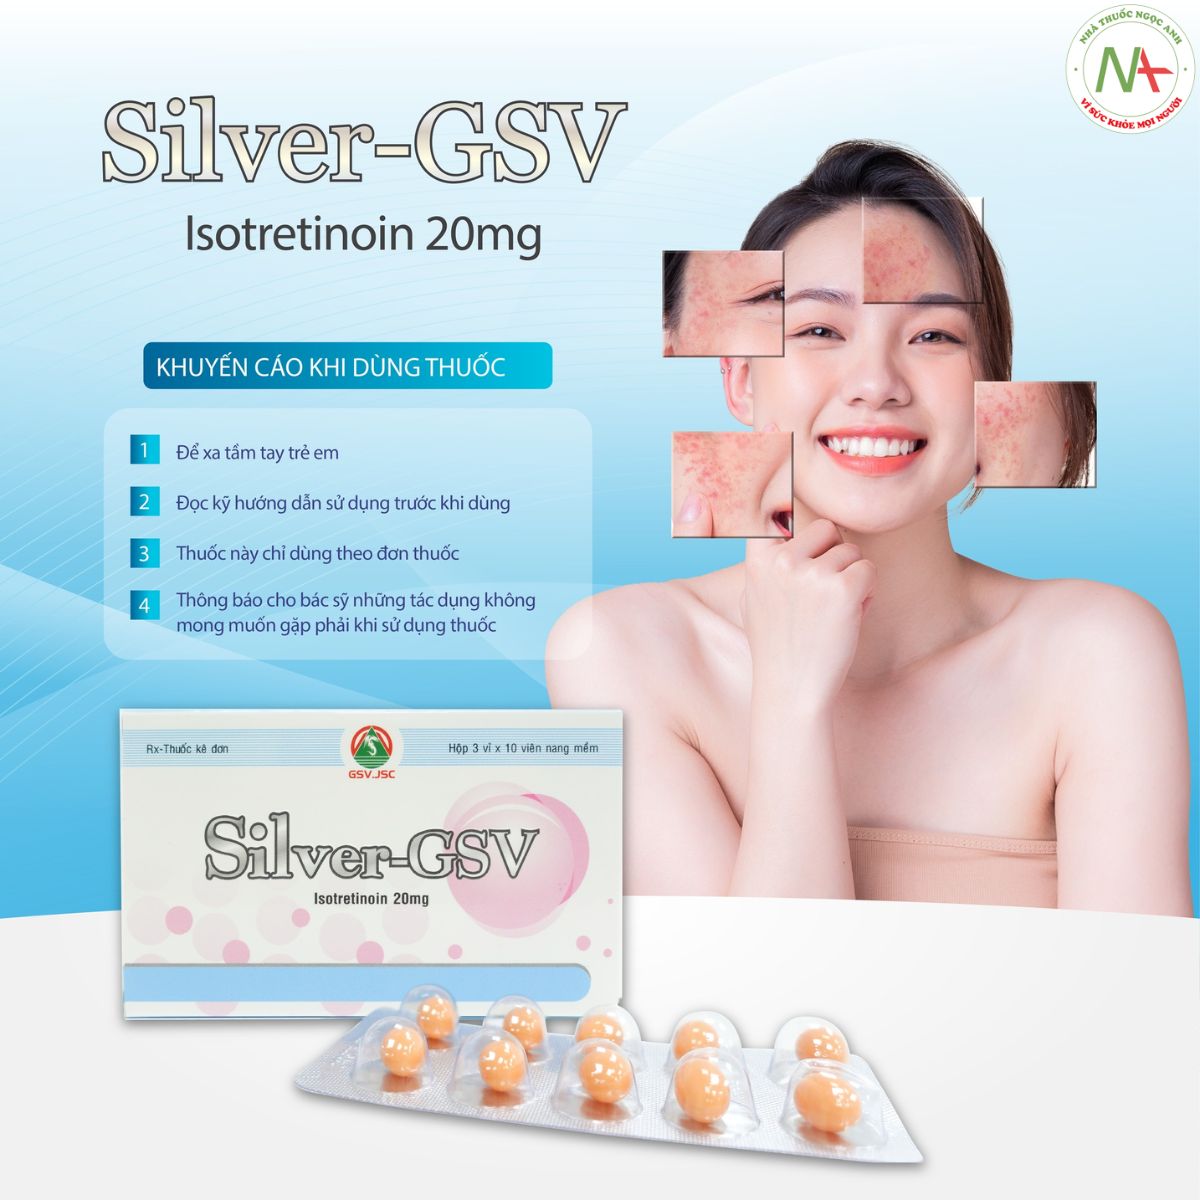 Silver-GSV được sử dụng khi có sự kê đơn của bác sĩ